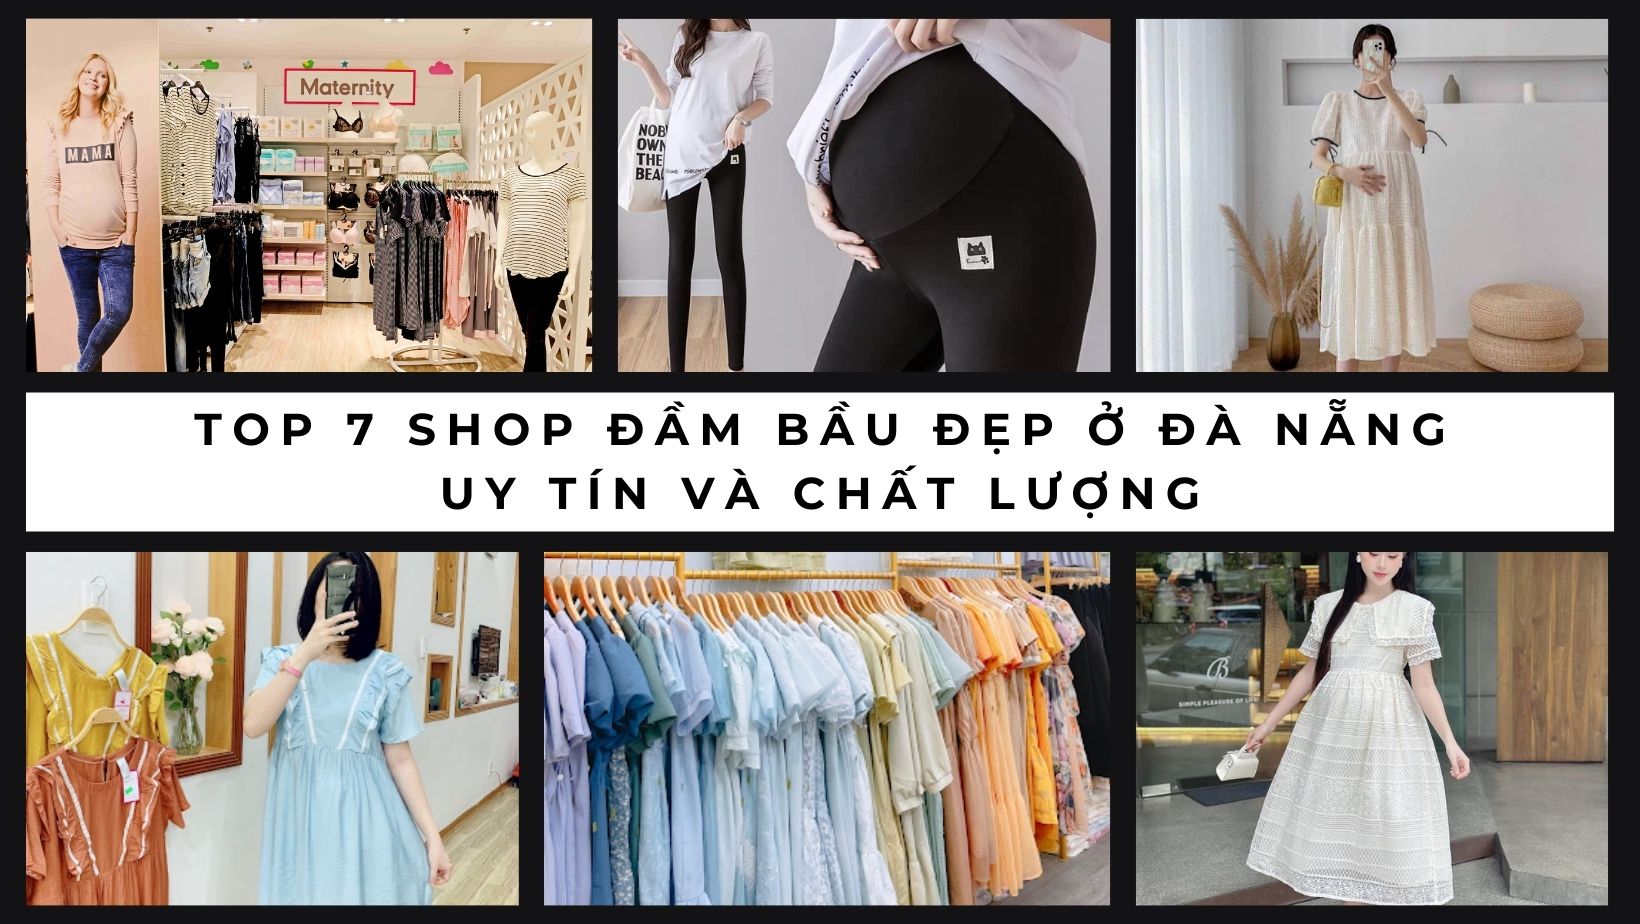 Top 7 shop đầm bầu đẹp ở Đà Nẵng uy tín và chất lượng